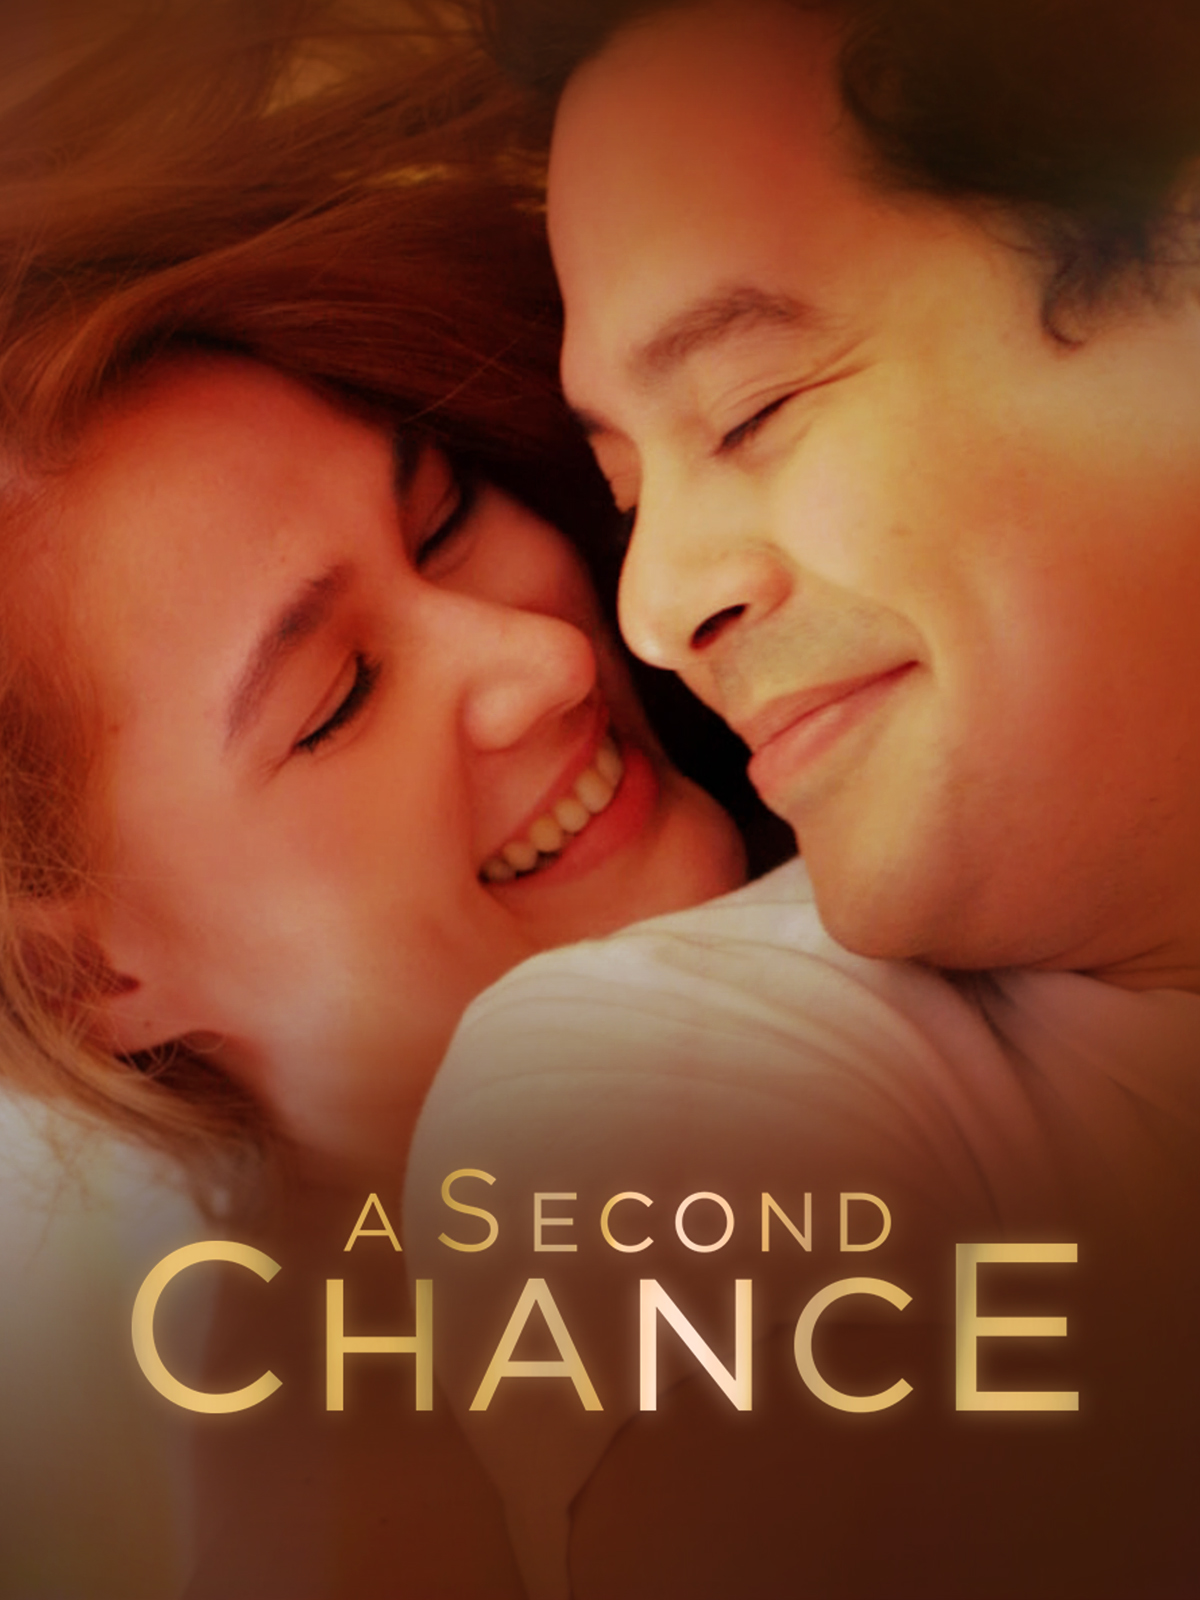 A Second Chance (2015) Screenshot 1